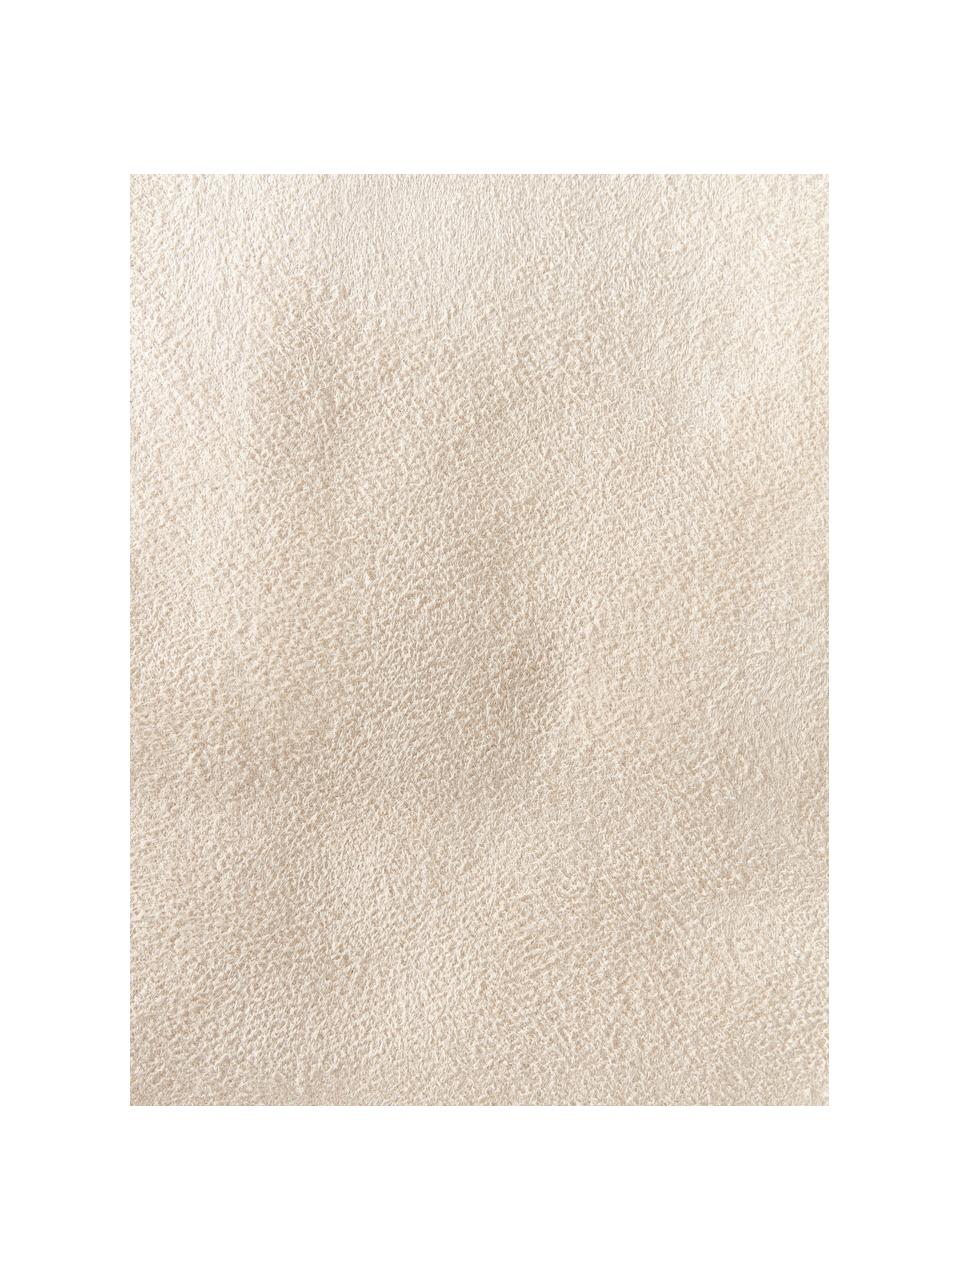 Sztuczne futro Morten, kręcone włosie, Złamana biel, S 60 x D 90 cm